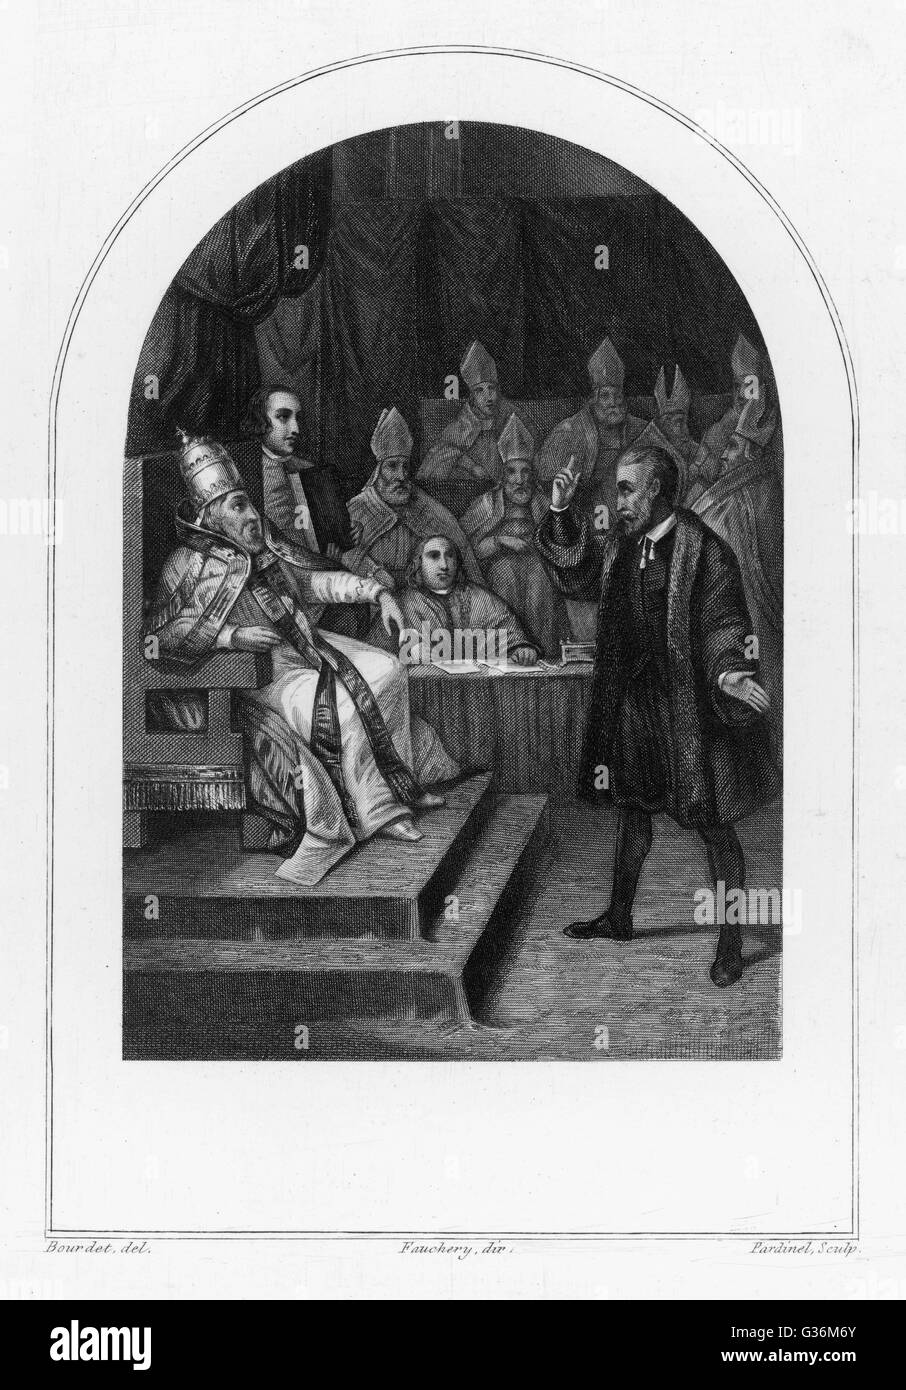 Matematico italiano, fisico e astronomo, Galileo Galilei (1564-1642), prima di Papa Urbano VIII quando in prova per eresia data: 1633 Foto Stock